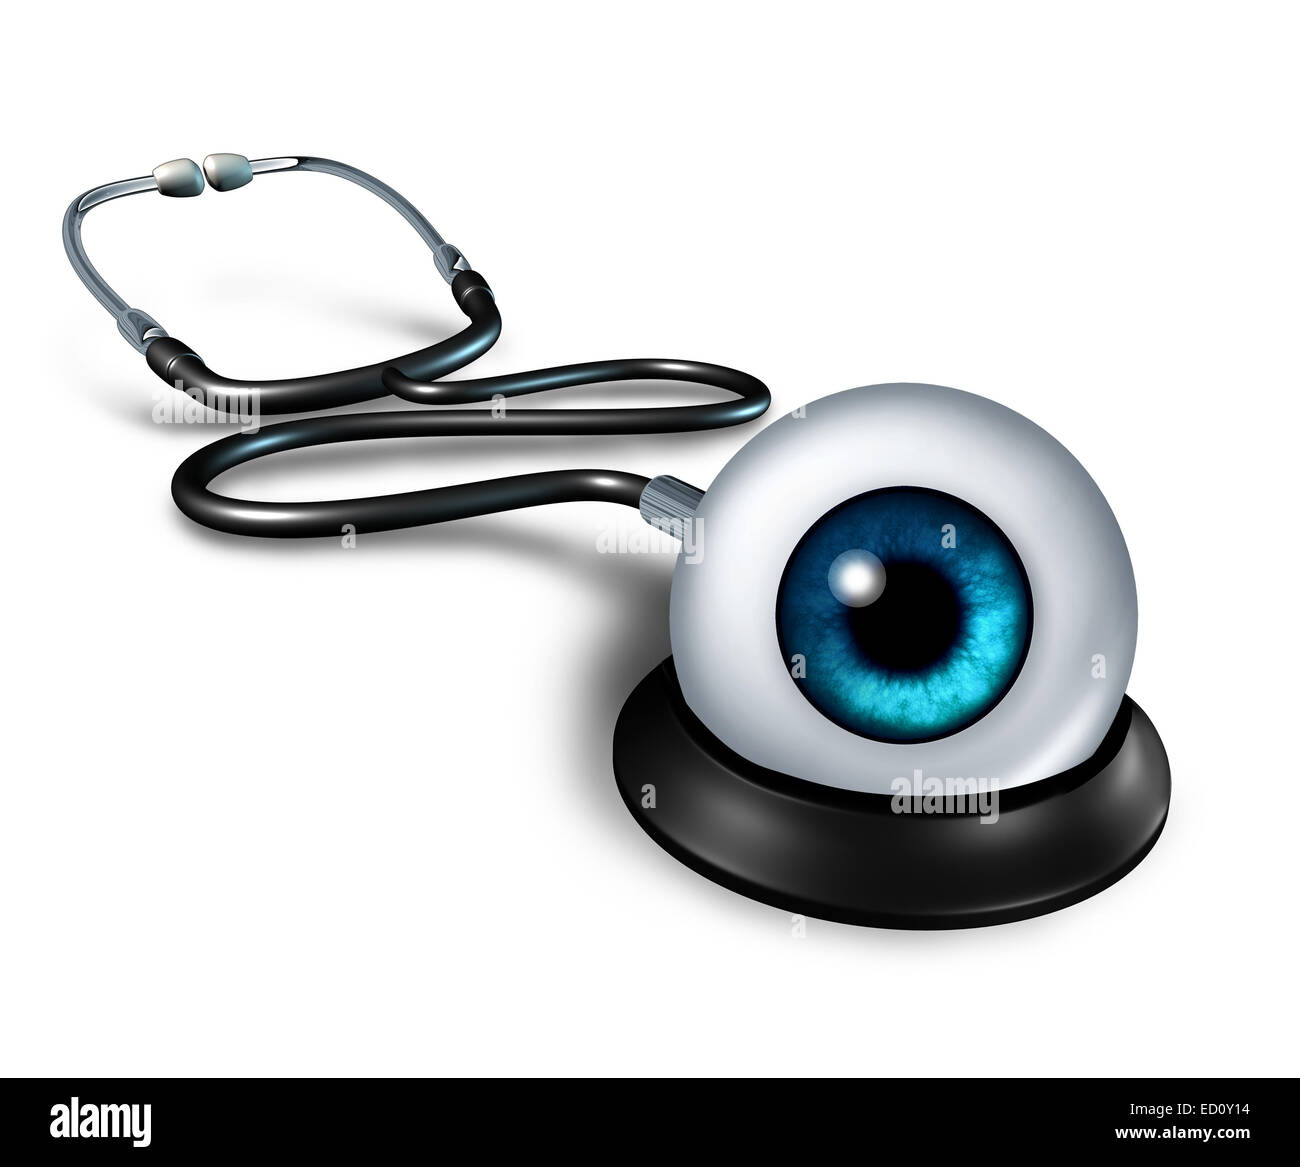 Esame medico health care concept come uno stetoscopio con un occhio umano come un vigile simbolo medico per fare una diagnosi exa Foto Stock